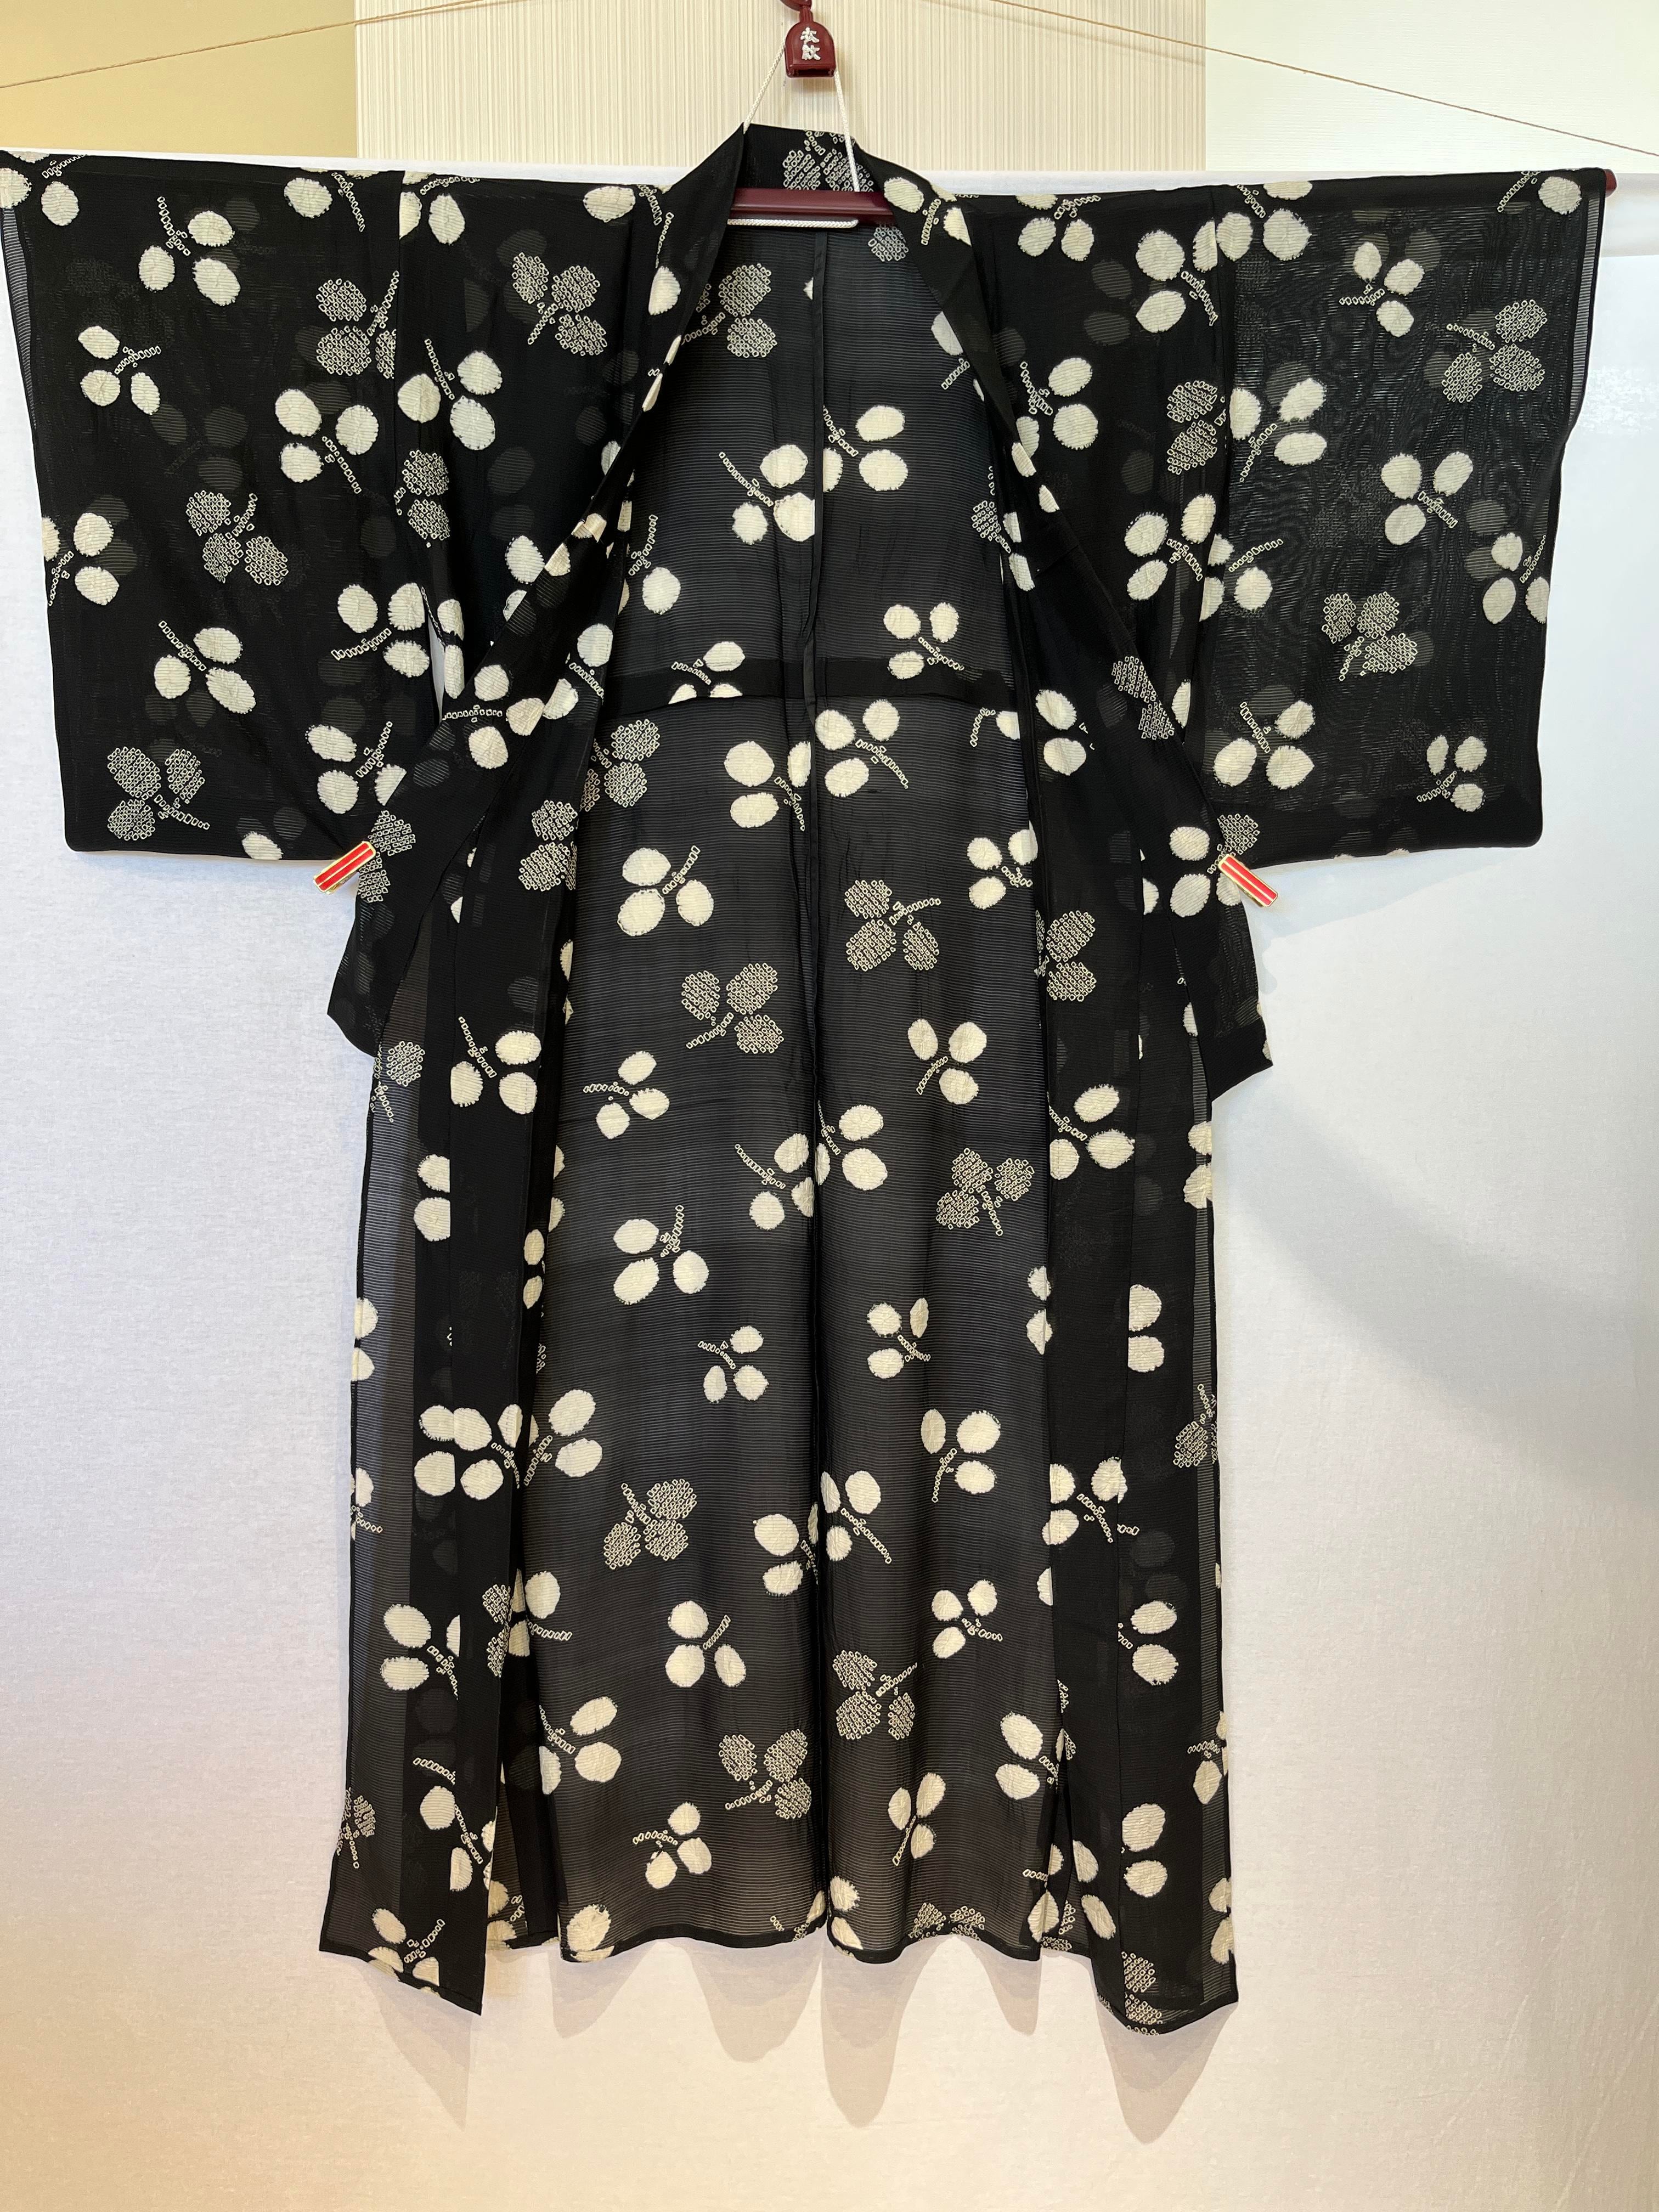 2182 アンティーク 夏用 絽 小紋 Antique Ro Komon Kimono for summer | リサイクル着物ショップ La遇  Used Kimono Shop Lagu powered by BASE